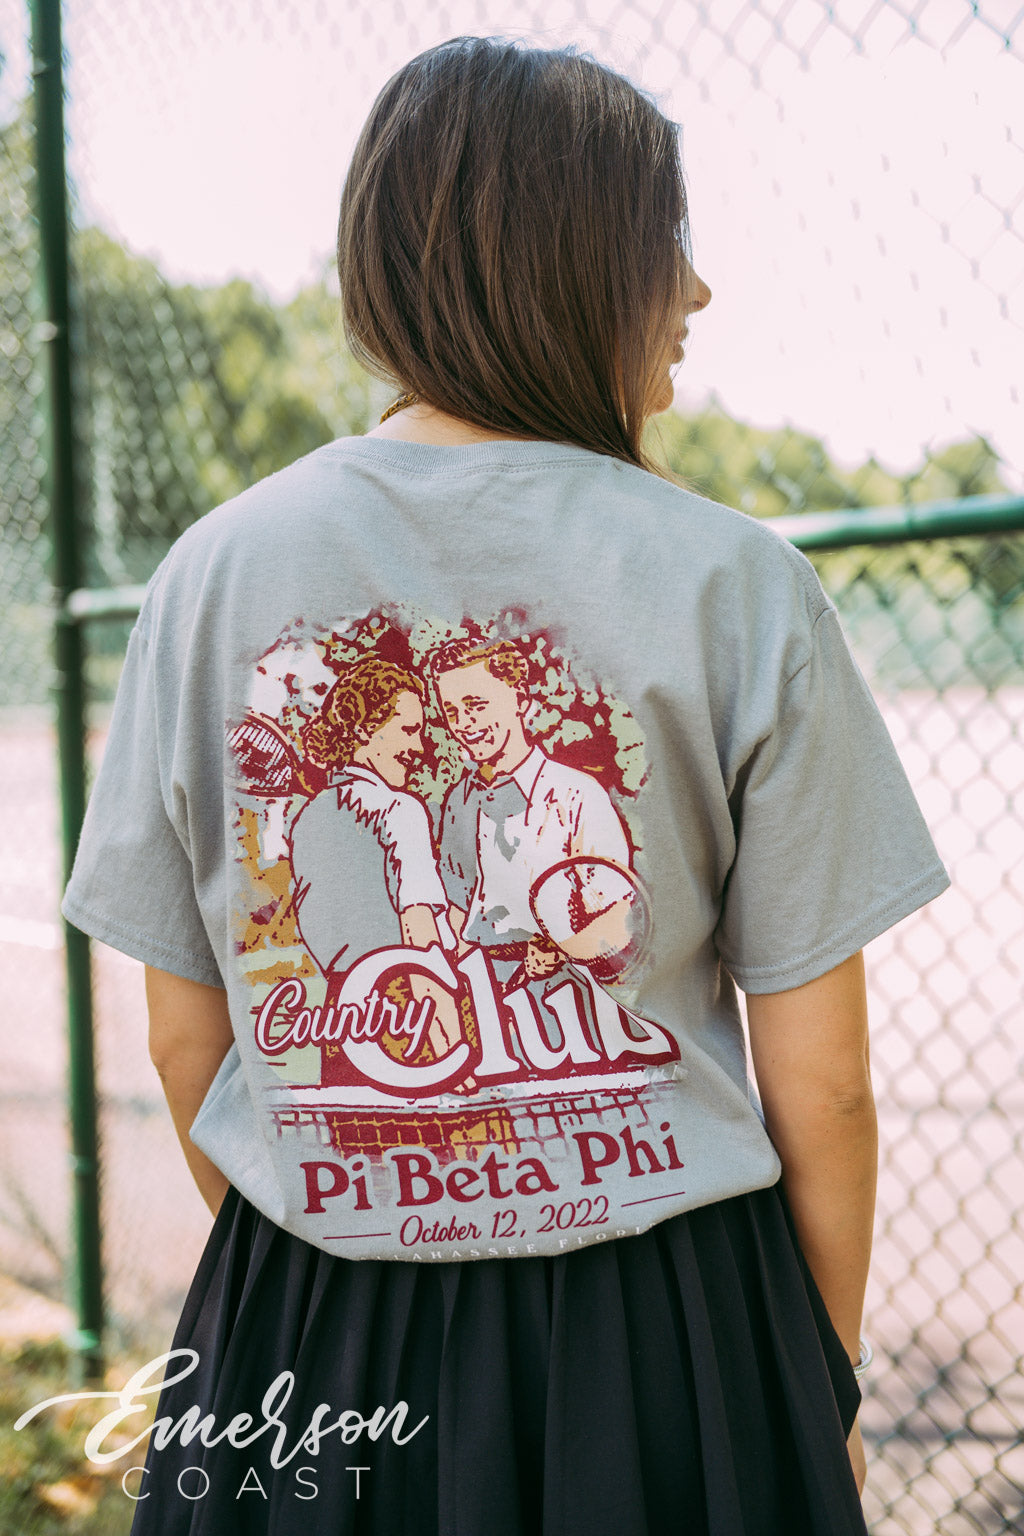 Pi Phi Country Club Tshirt